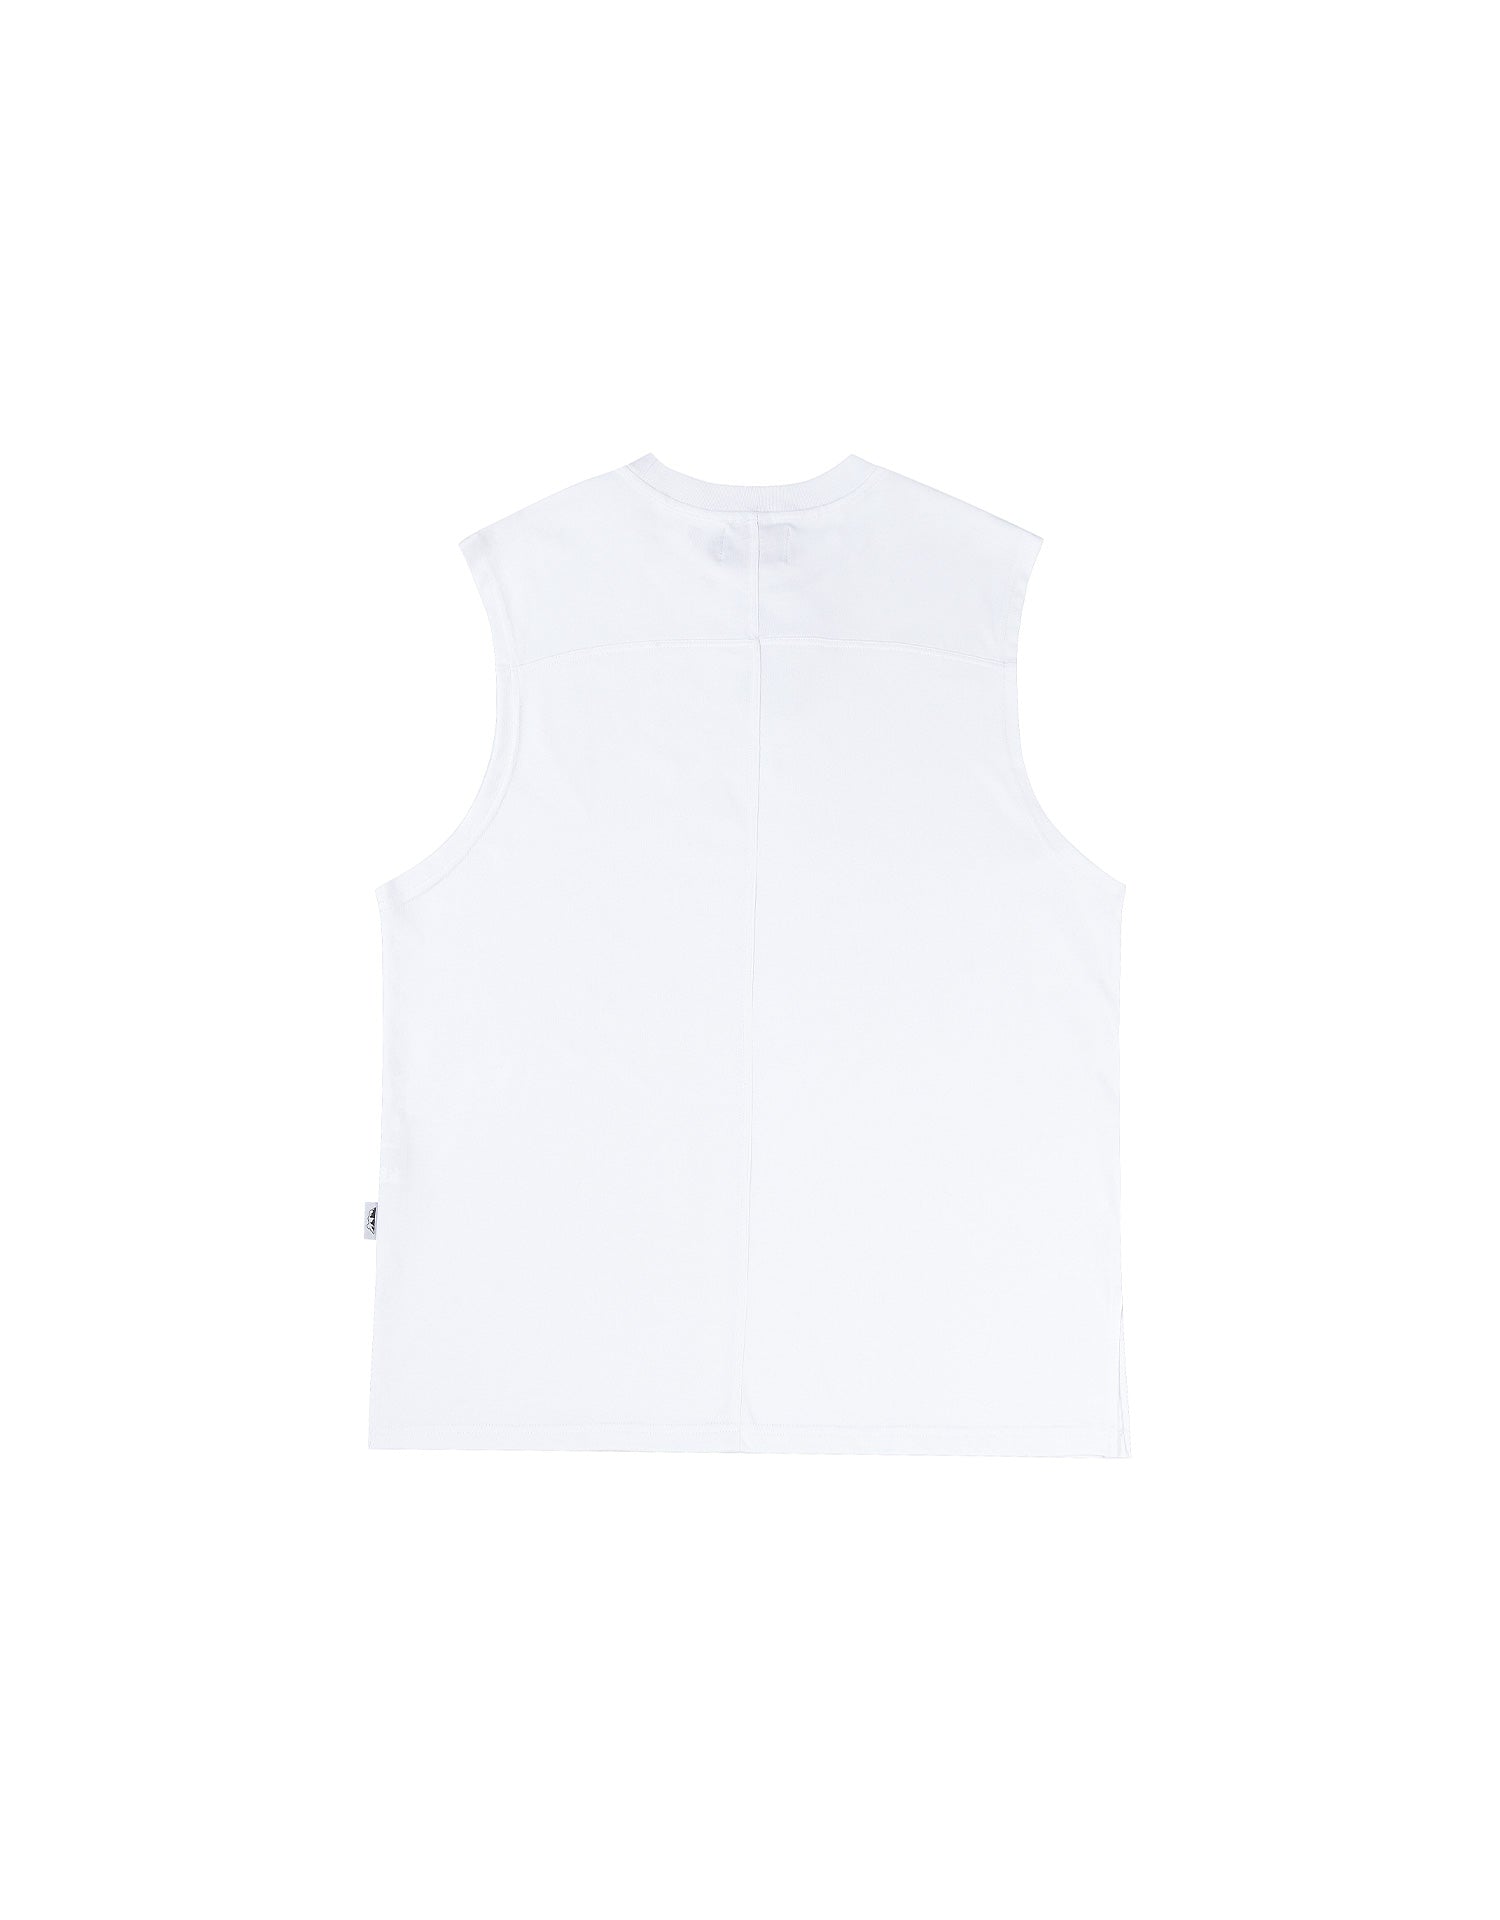 TopBasics Plain Cotton Vest